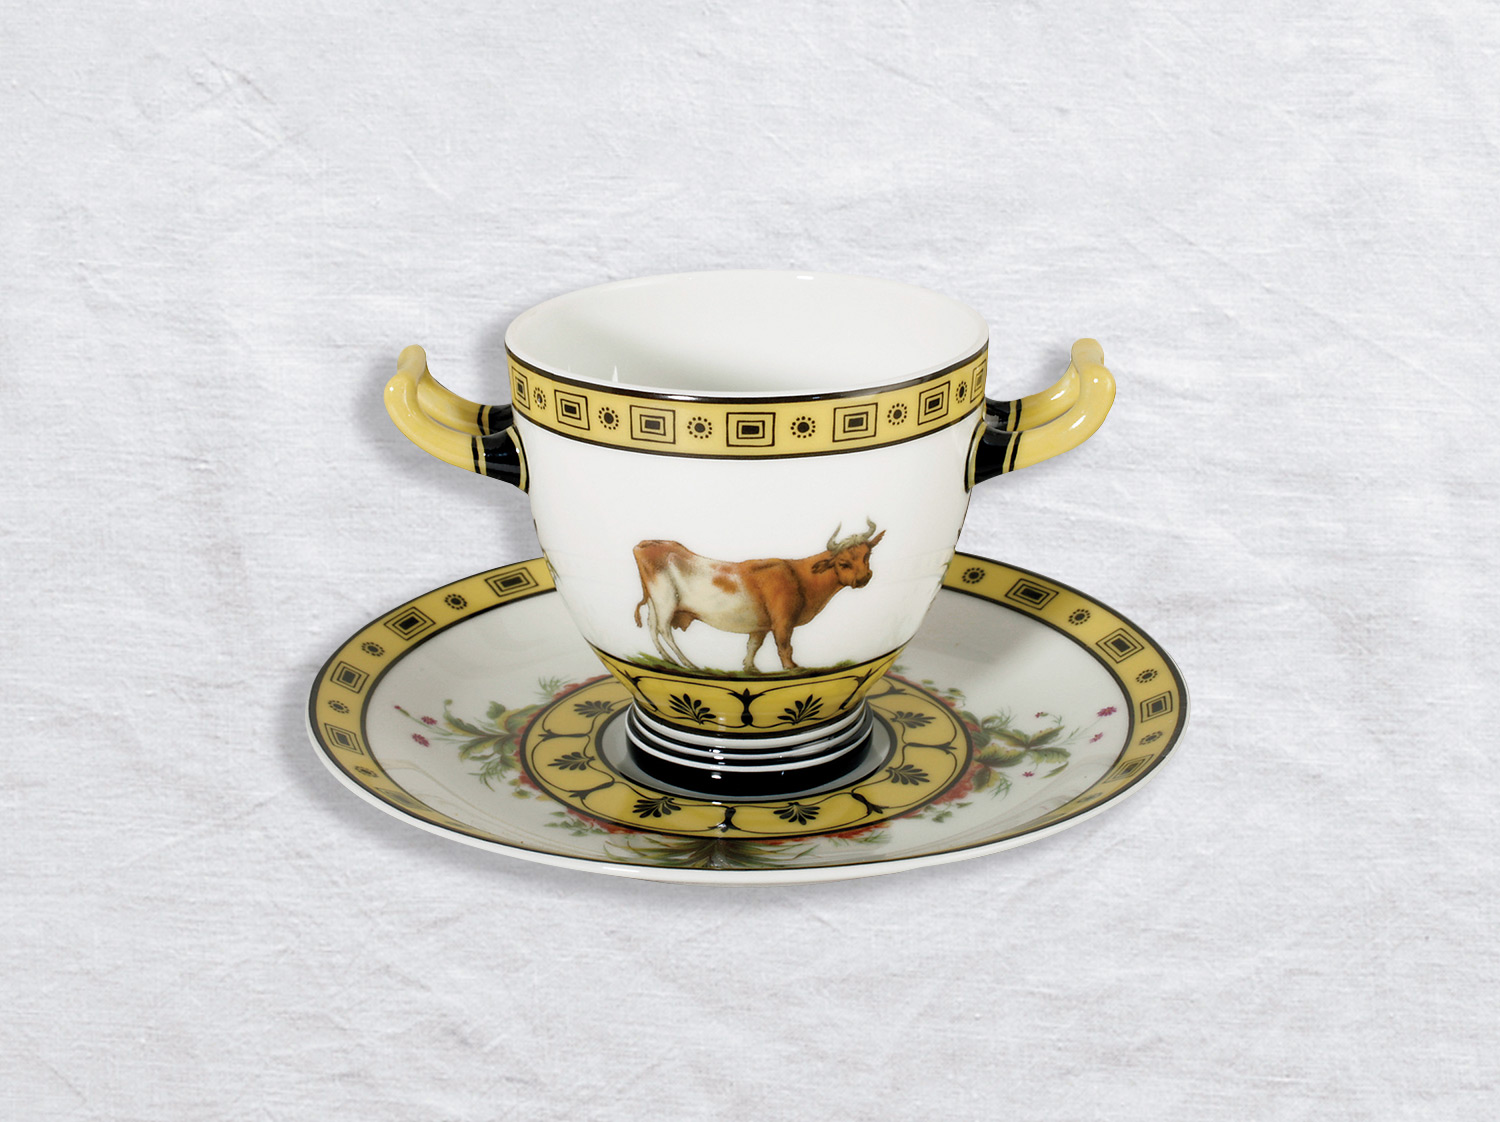 Gobelet à anses étrusques et soucoupe en porcelaine de la collection La laiterie de rambouillet Bernardaud